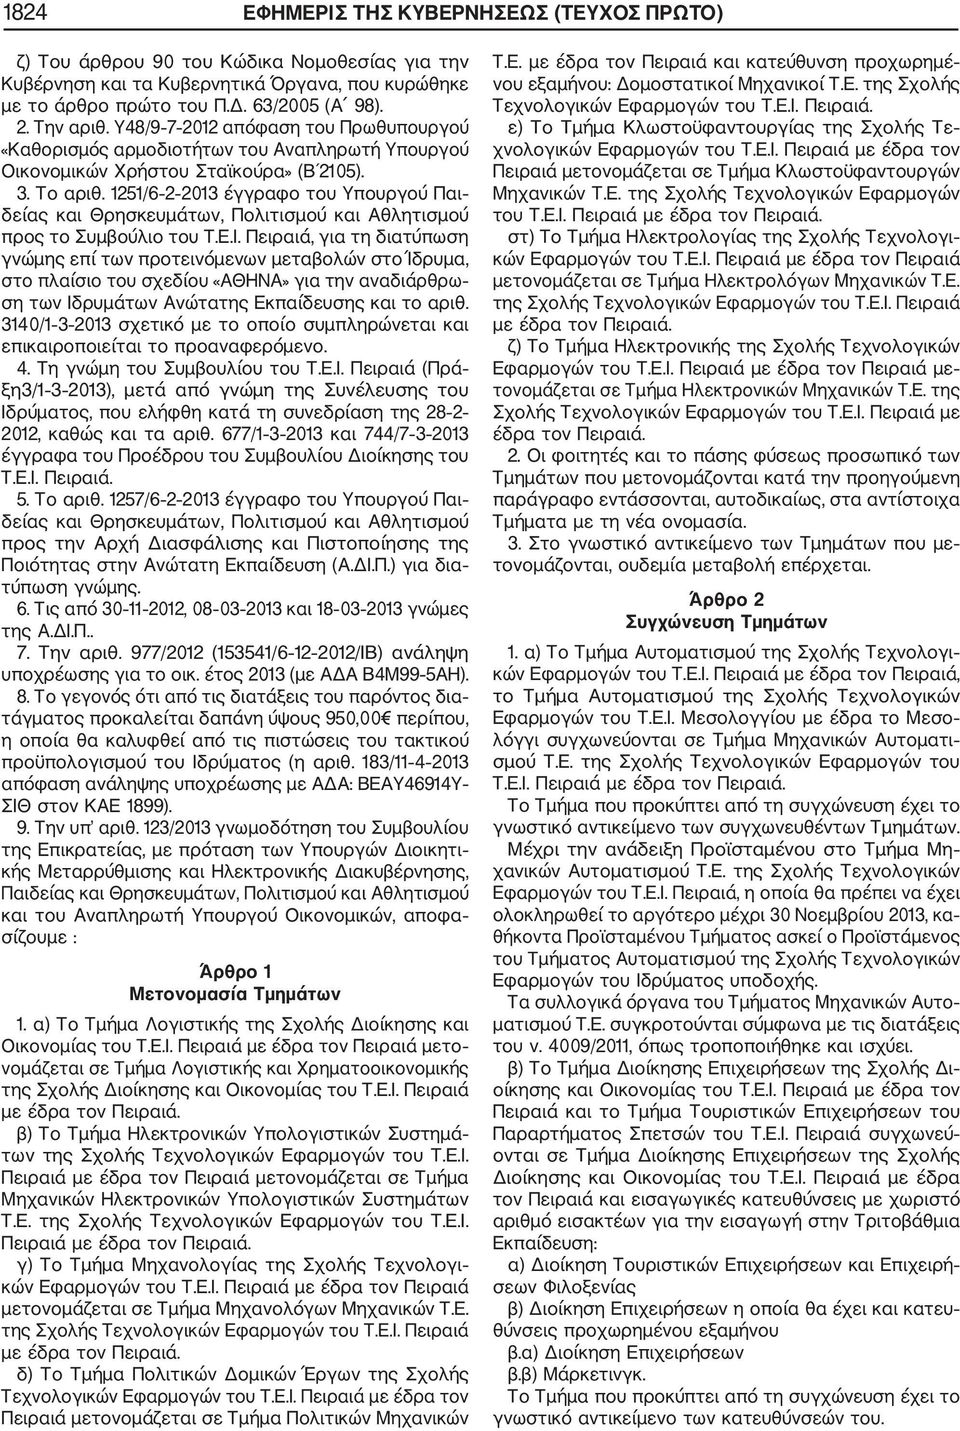 1251/6 2 2013 έγγραφο του Υπουργού Παι δείας και Θρησκευμάτων, Πολιτισμού και Αθλητισμού προς το Συμβούλιο του Τ.Ε.Ι.